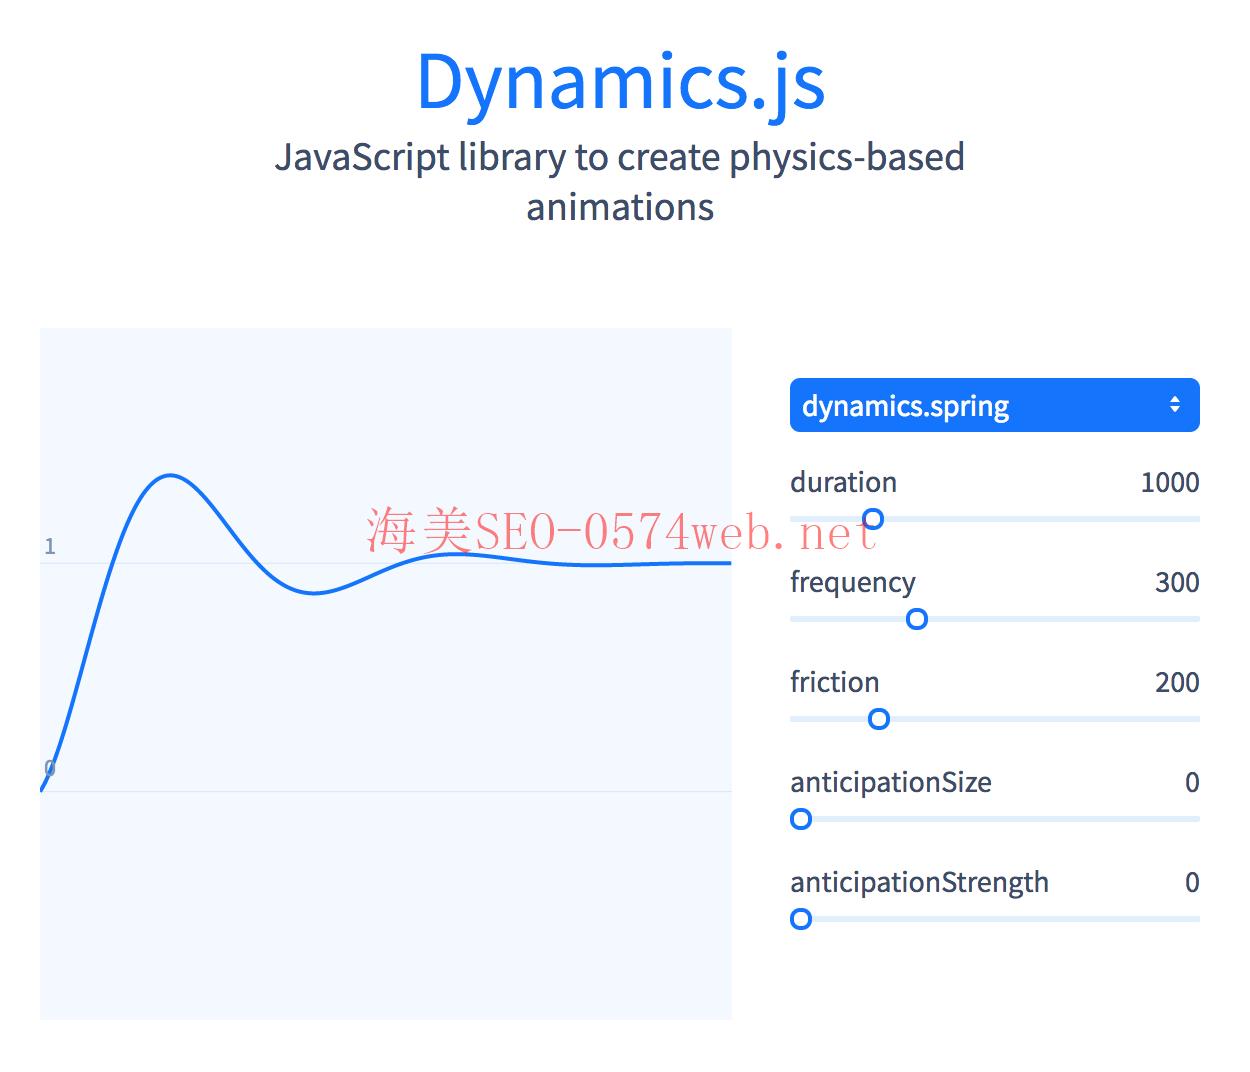 Dynamics.js website